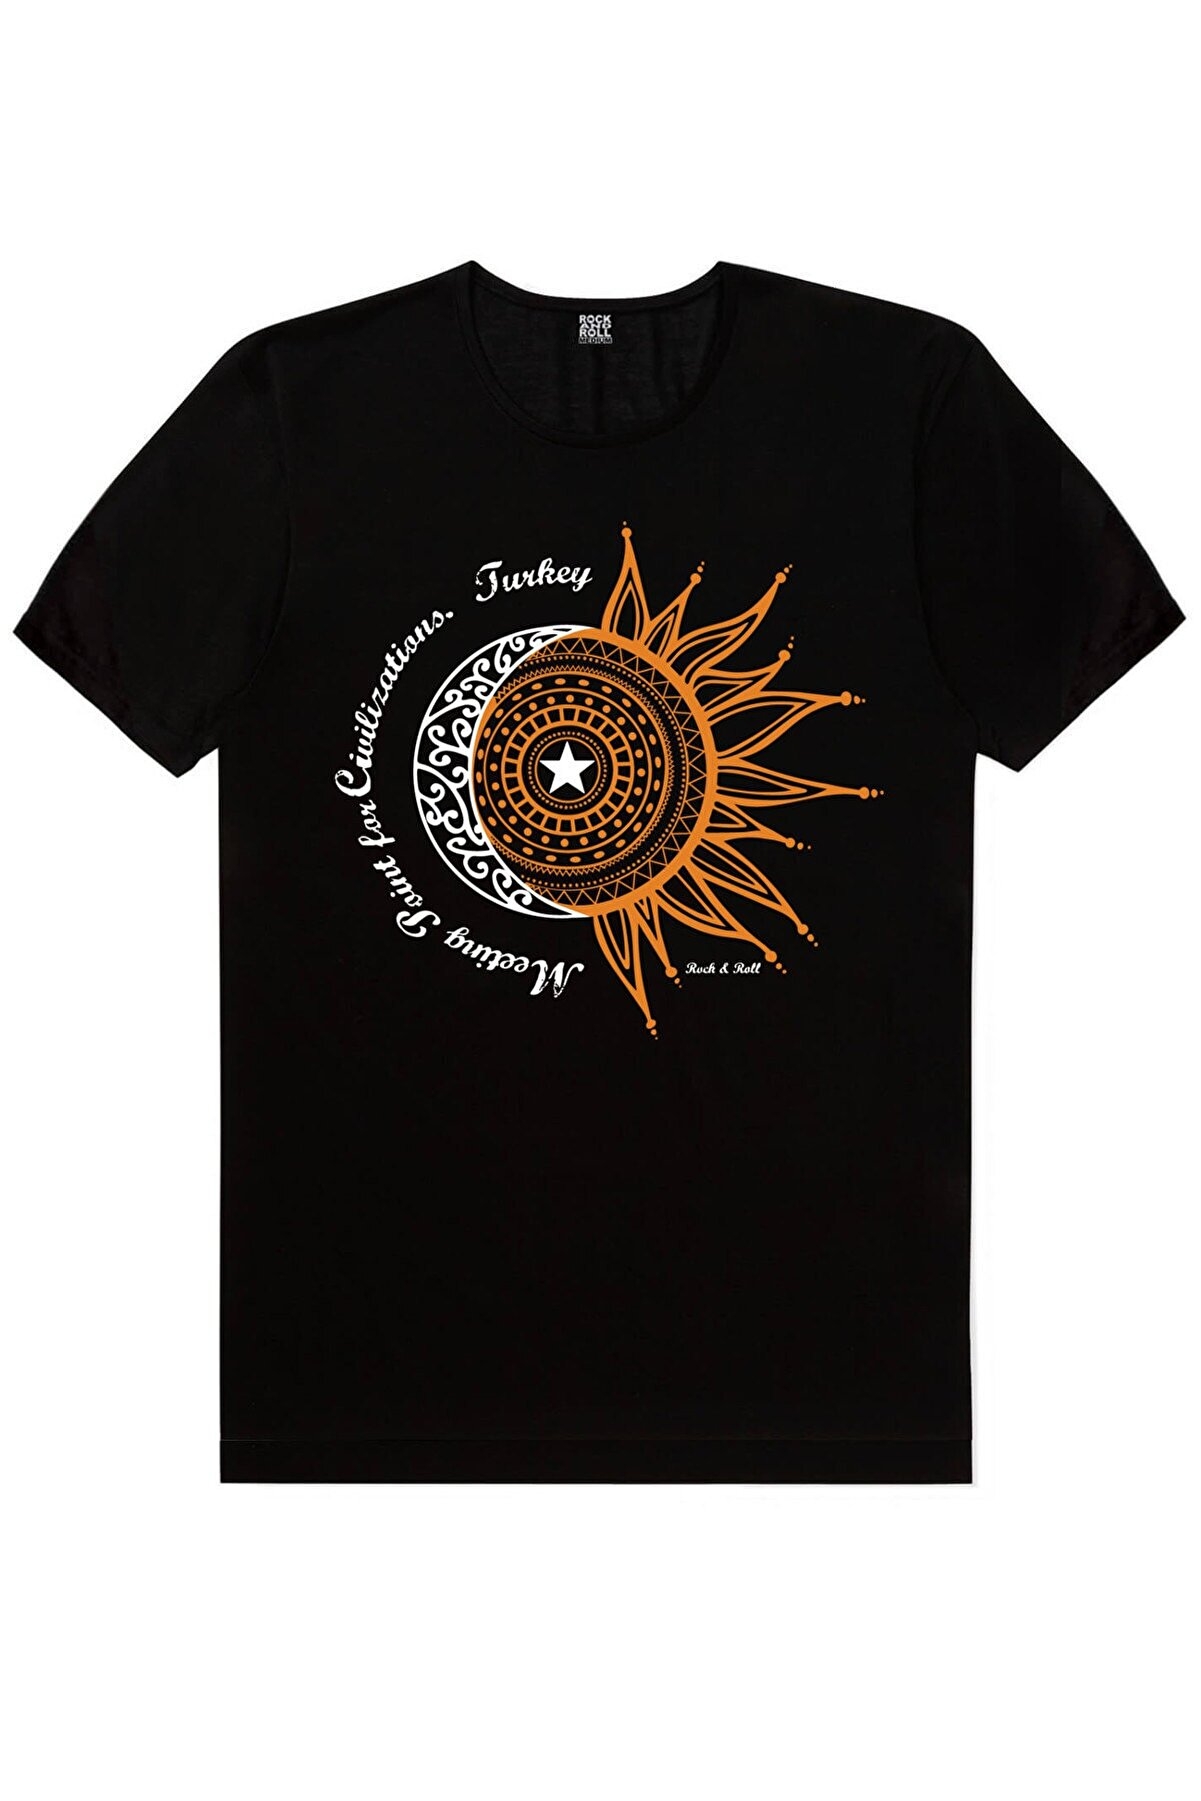 Türkiye Ay Yıldız Siyah, Türkiye Harfler Beyaz Erkek 2'li Eko Paket T-shirt